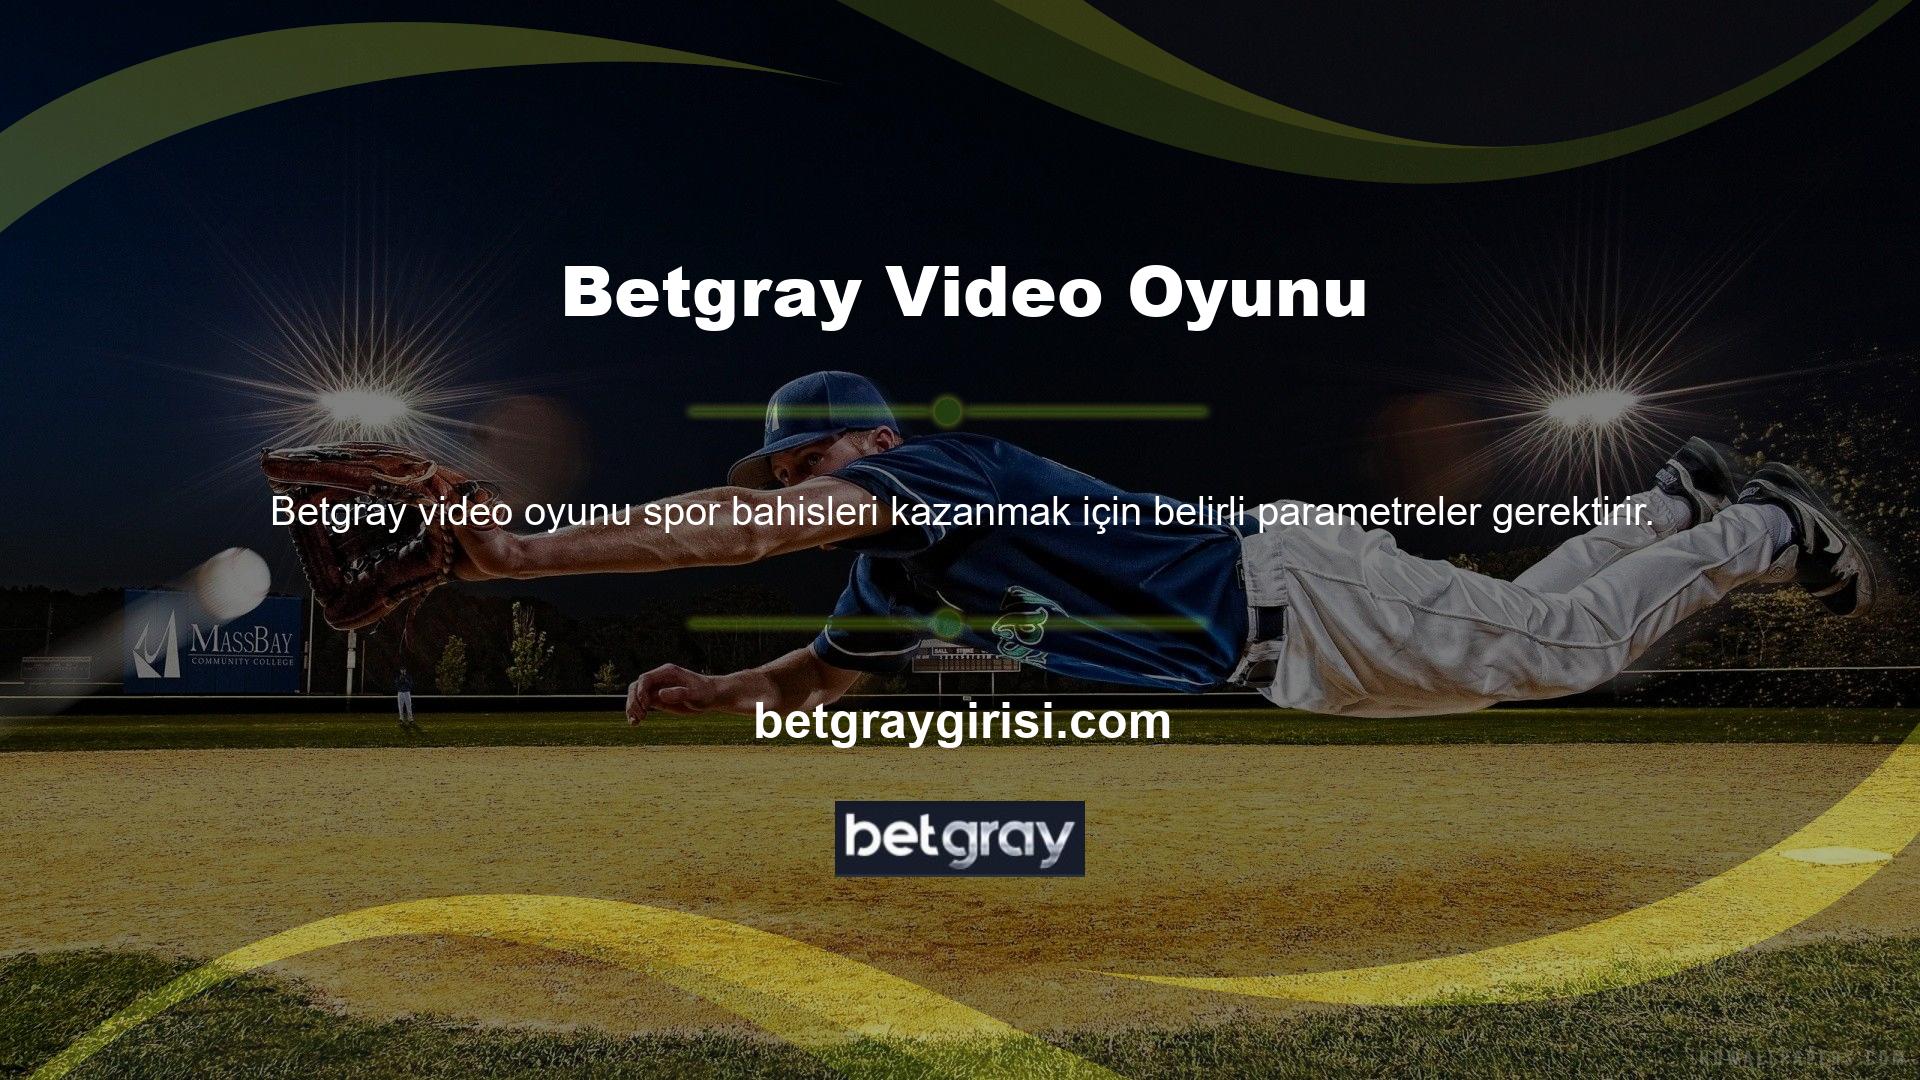 Sizi en iyi ayarları sunan Betgray TV bahis heyecanına katılmaya davet ediyoruz